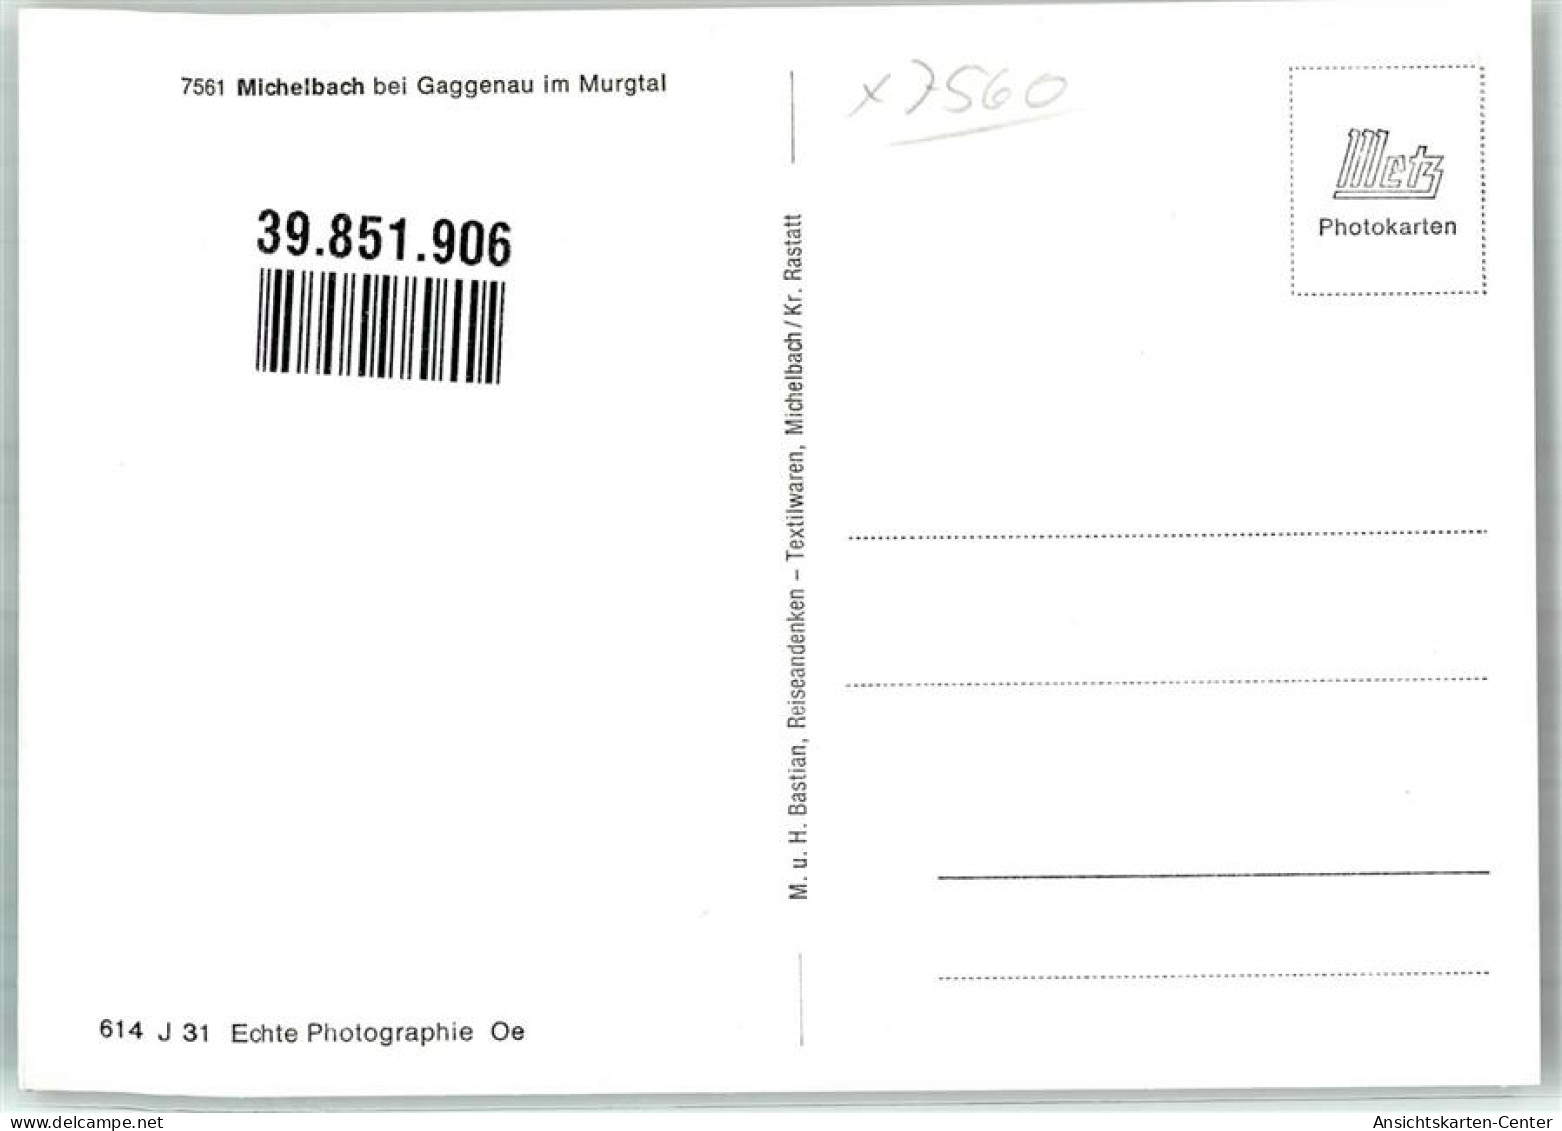 39851906 - Michelbach , Murgtal - Gaggenau